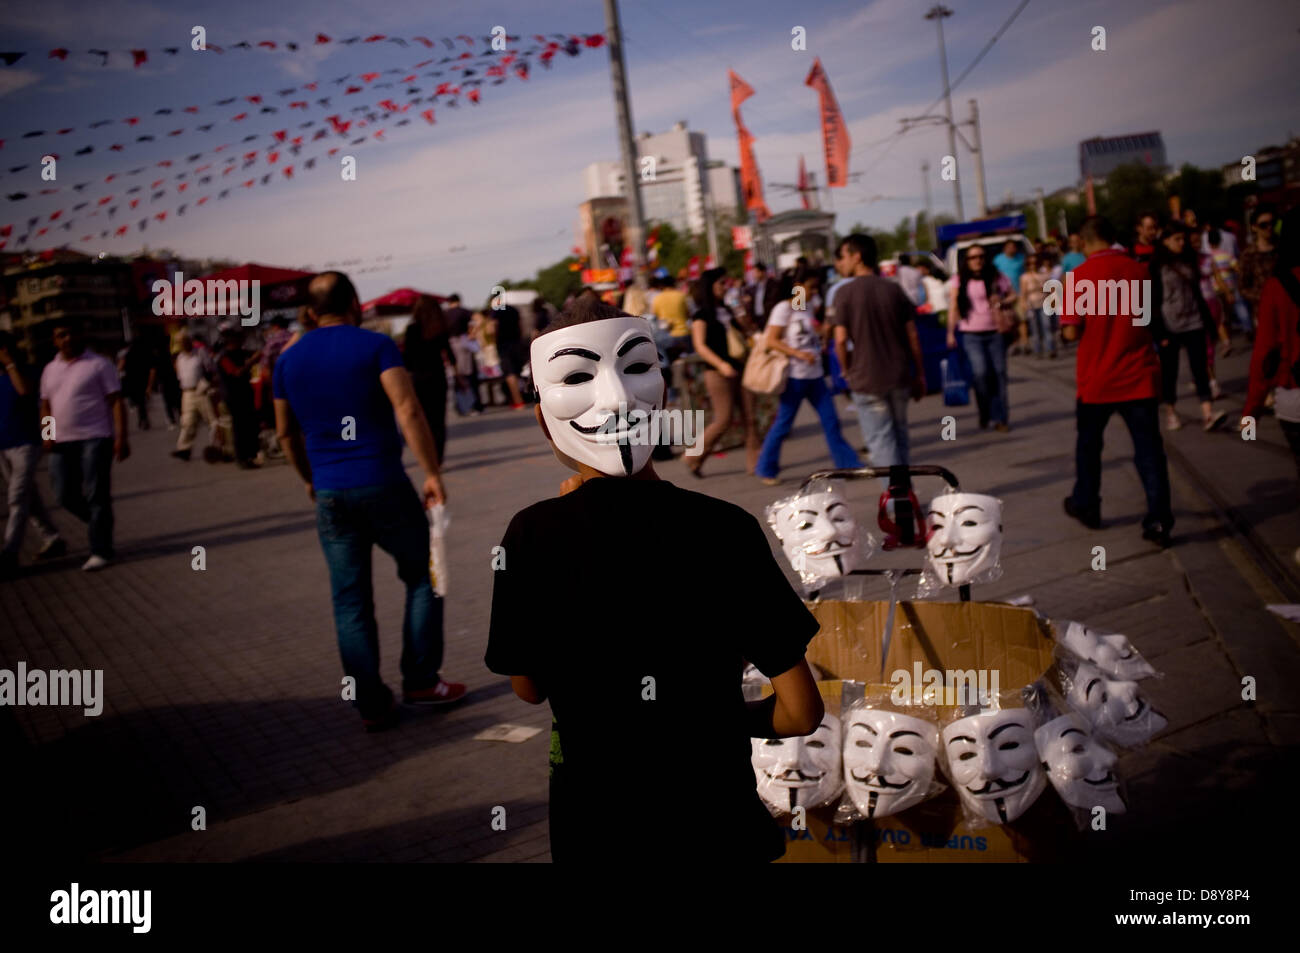 Istanbul, Turquie. 6 juin, 2013. Un garçon vend des masques anonyme sur la place Taksim. Après plusieurs jours de conflit, la Place Taksim à Istanbul était calme le 6 juin, avec les gens du camping et de personnes scandant des slogans contre le gouvernement. Crédit : Jordi Boixareu/Alamy Live News Banque D'Images